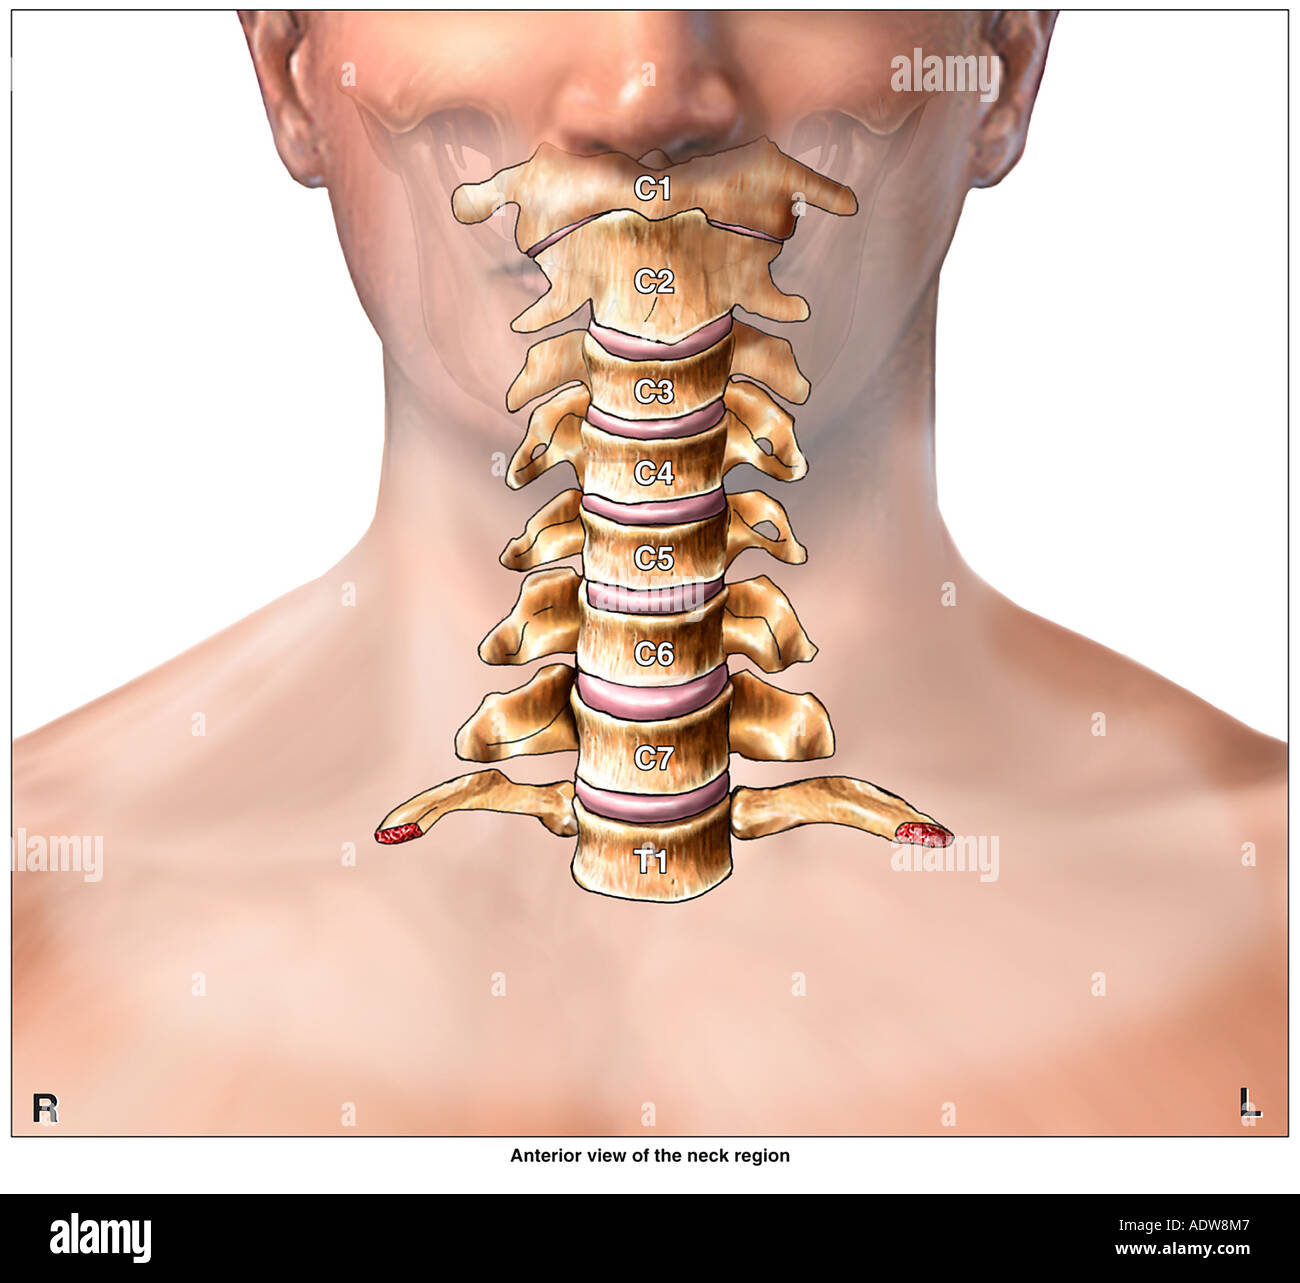 vertebrae of neck